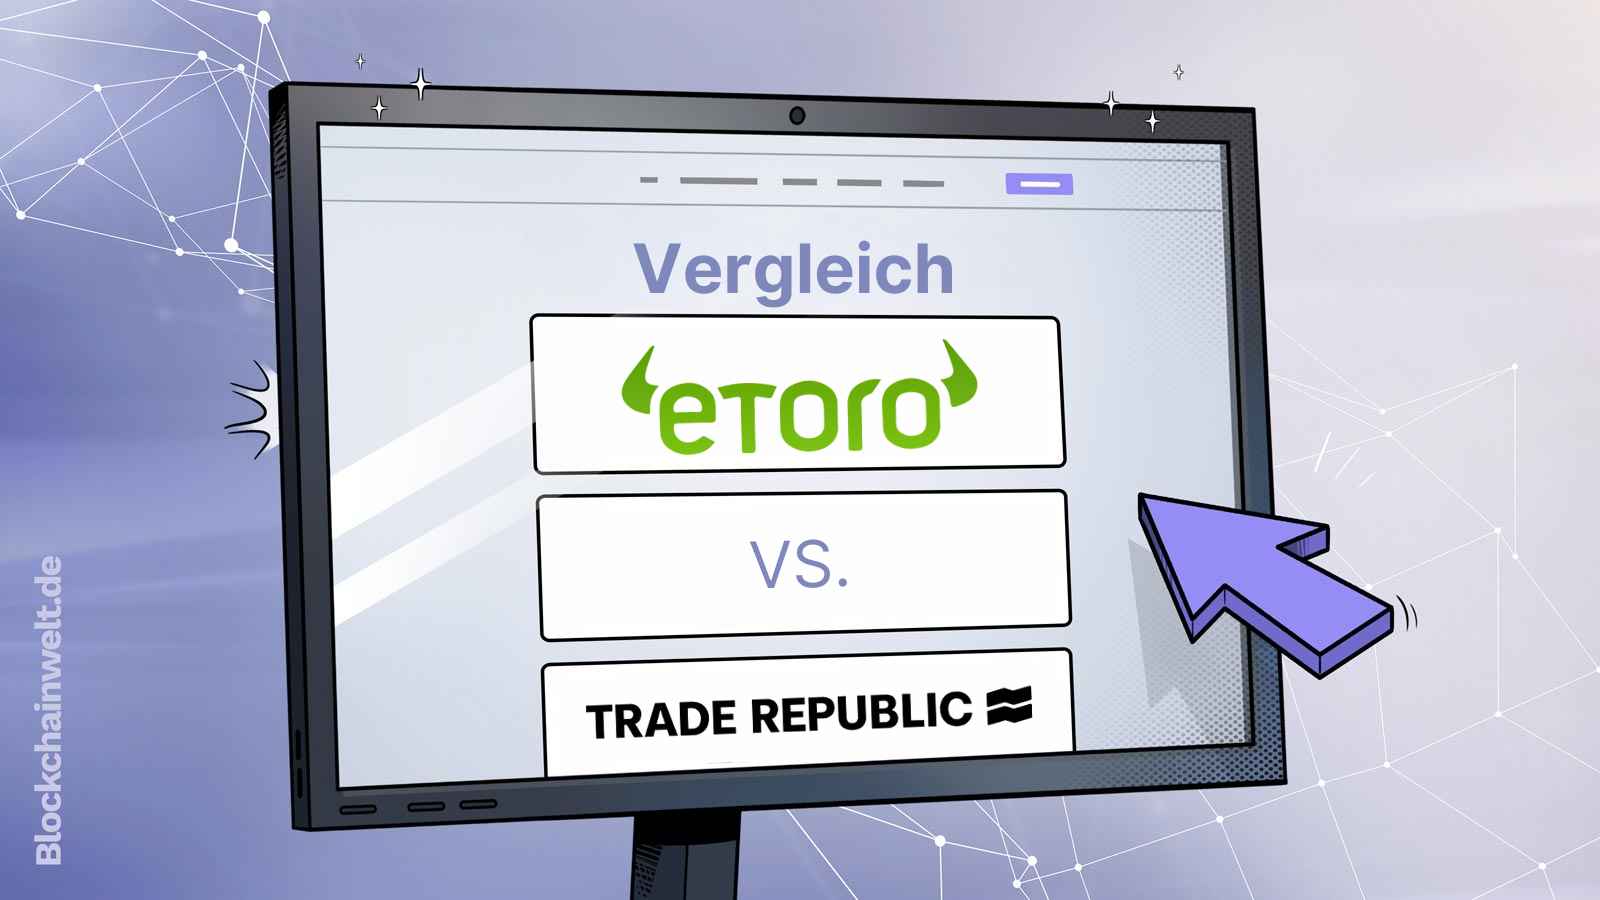 eToro vs. Trade Republic Vergleich